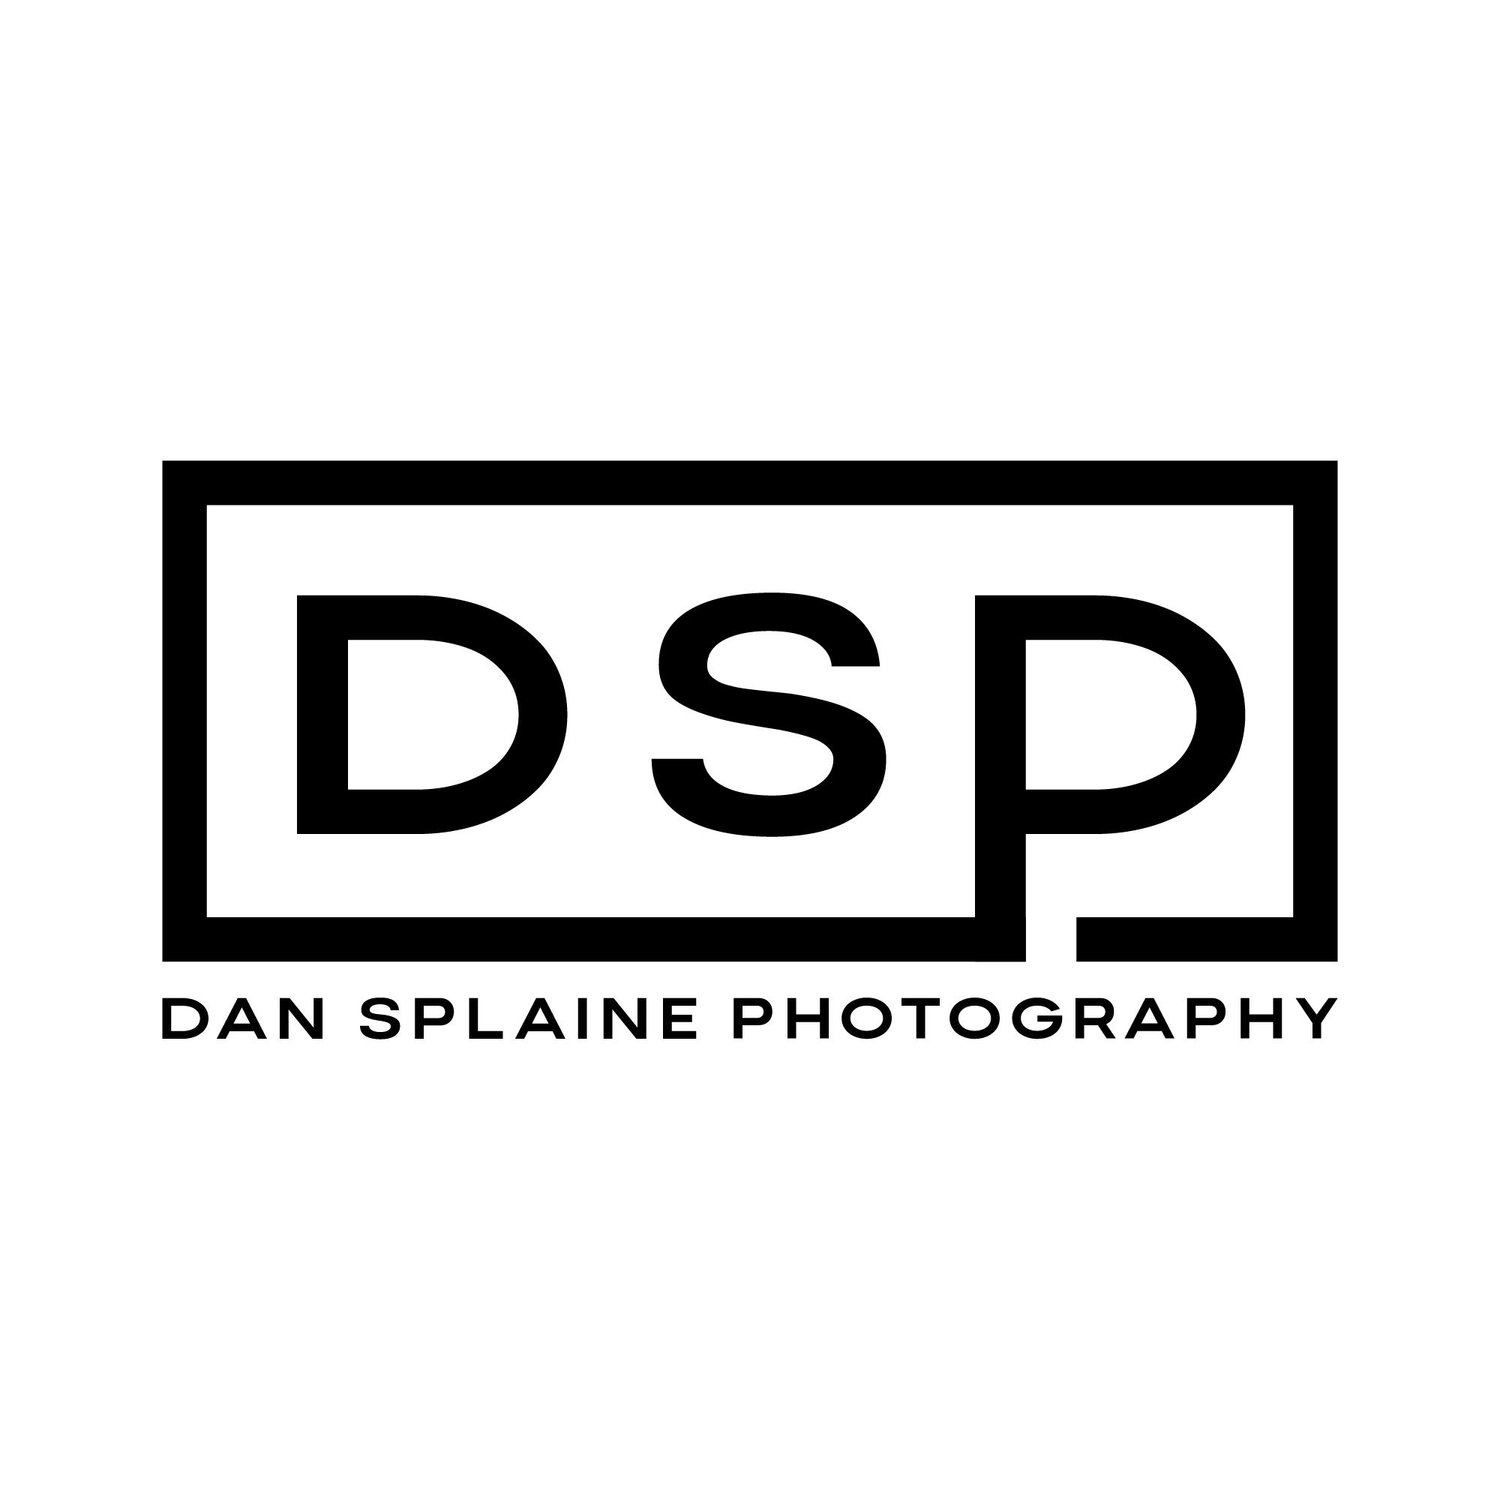 Dan Splaine Photography